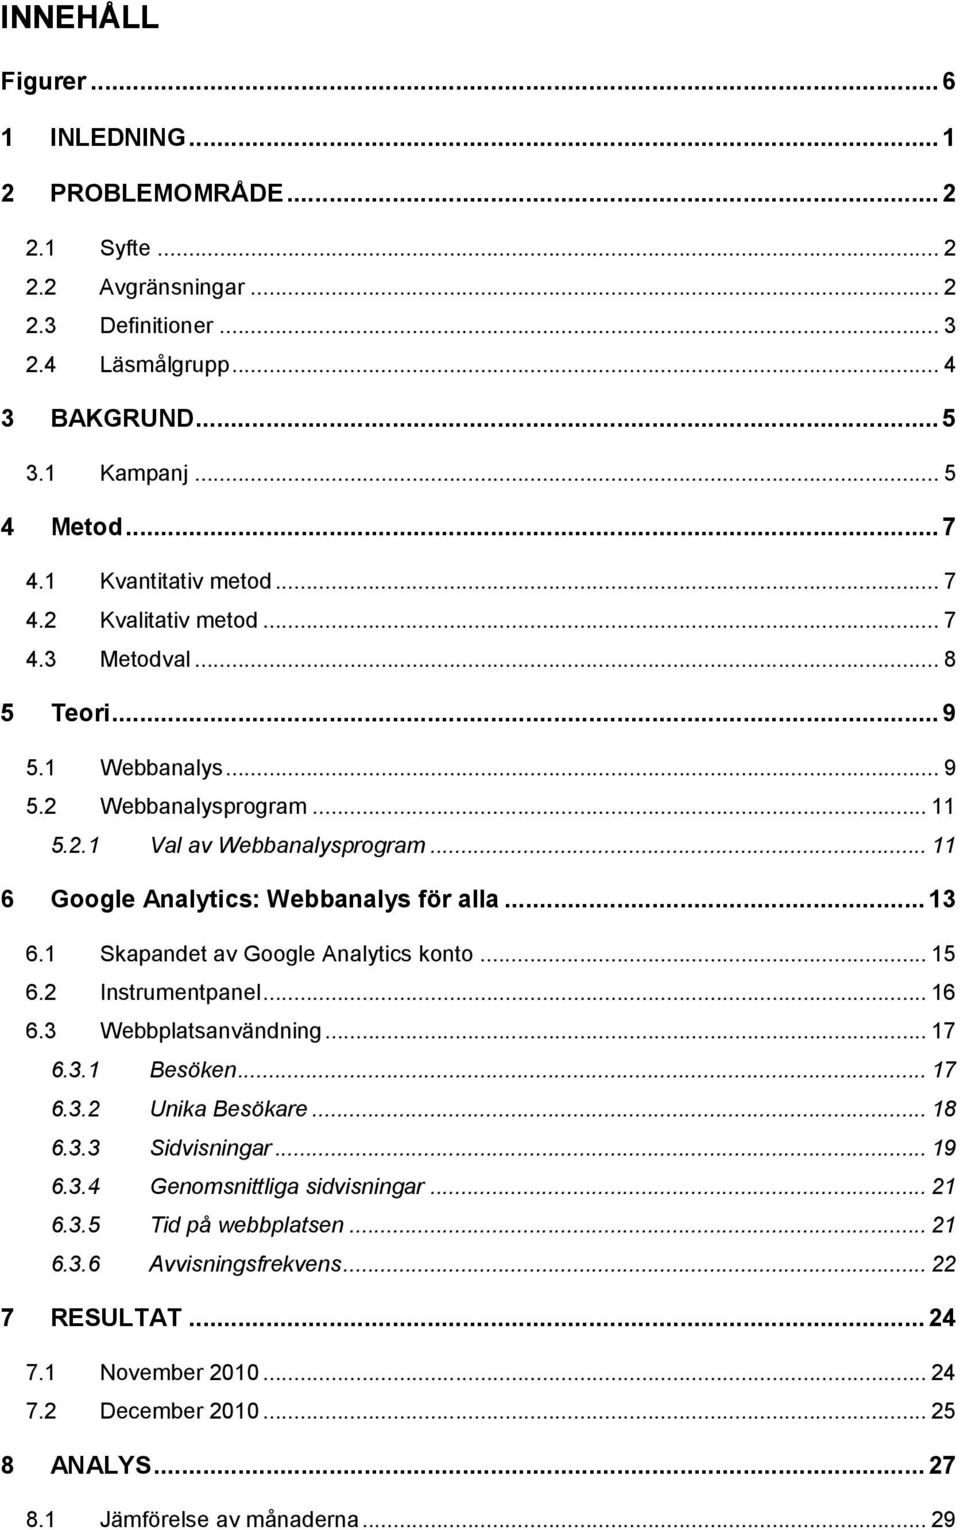 .. 11 6 Google Analytics: Webbanalys för alla... 13 6.1 Skapandet av Google Analytics konto... 15 6.2 Instrumentpanel... 16 6.3 Webbplatsanvändning... 17 6.3.1 Besöken... 17 6.3.2 Unika Besökare.